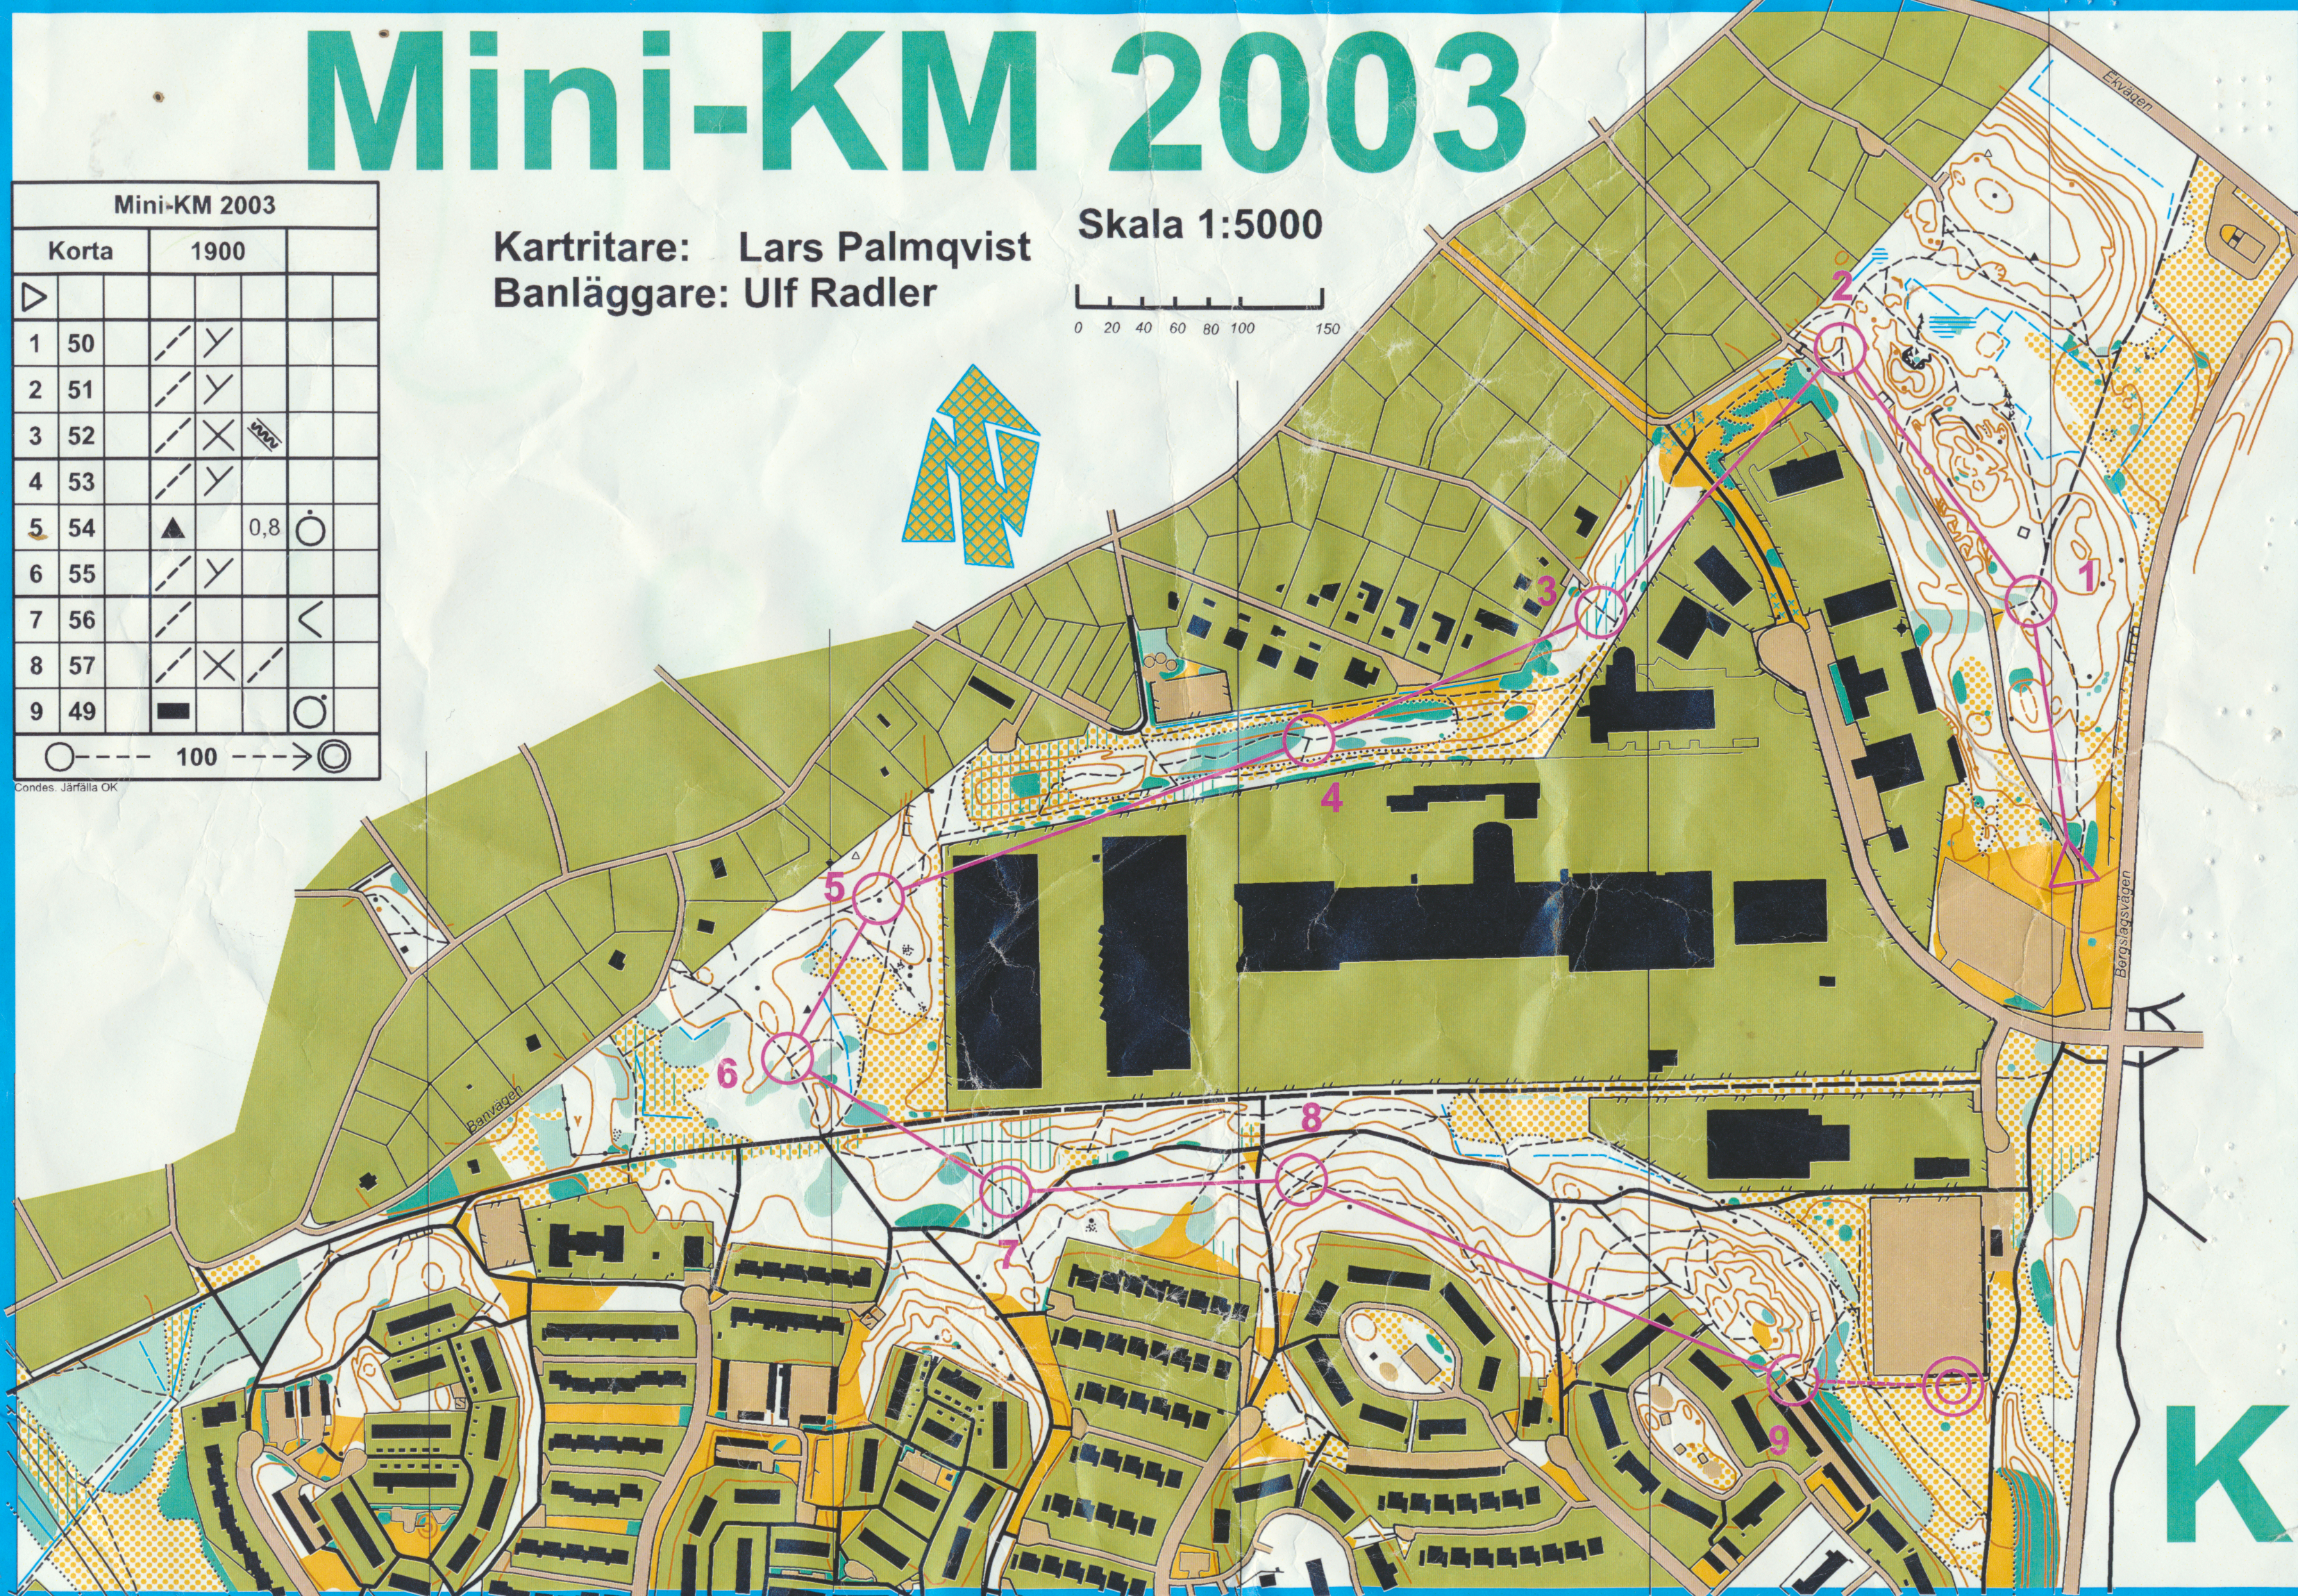 Mini-KM (28/08/2003)